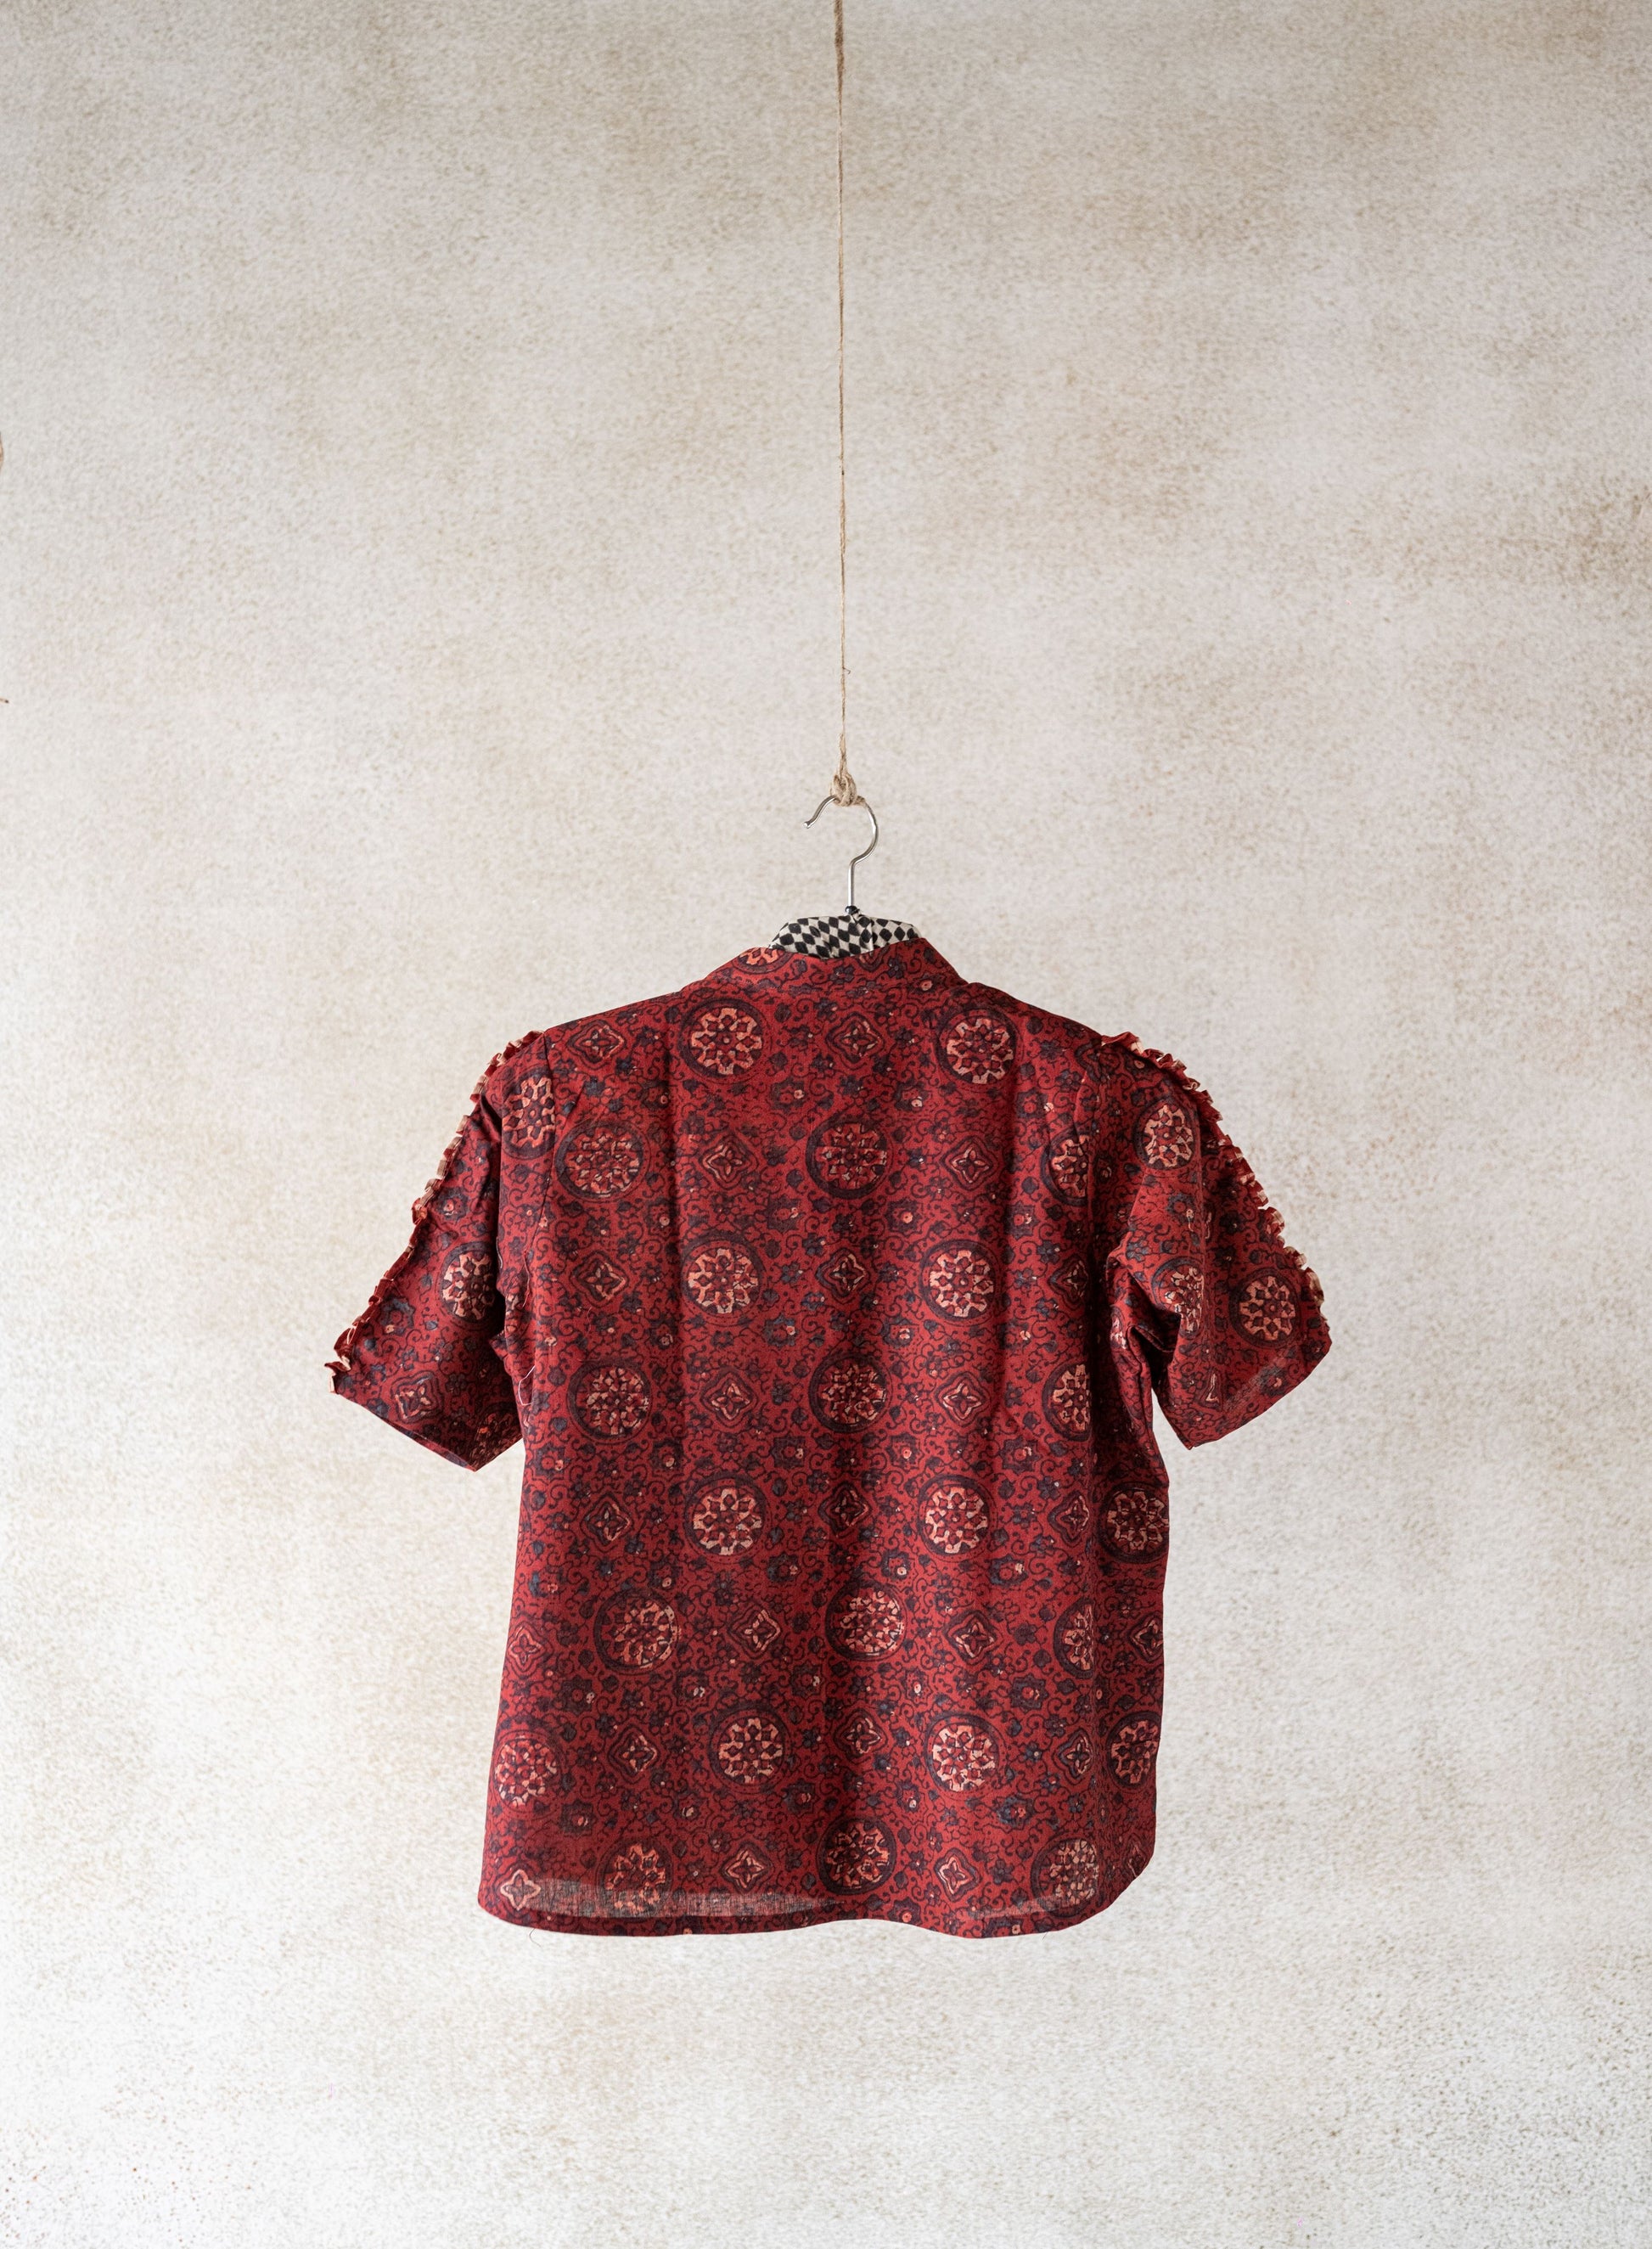 Cotton ajrakh shirt in maroon color, Ajrakh cotton shirt